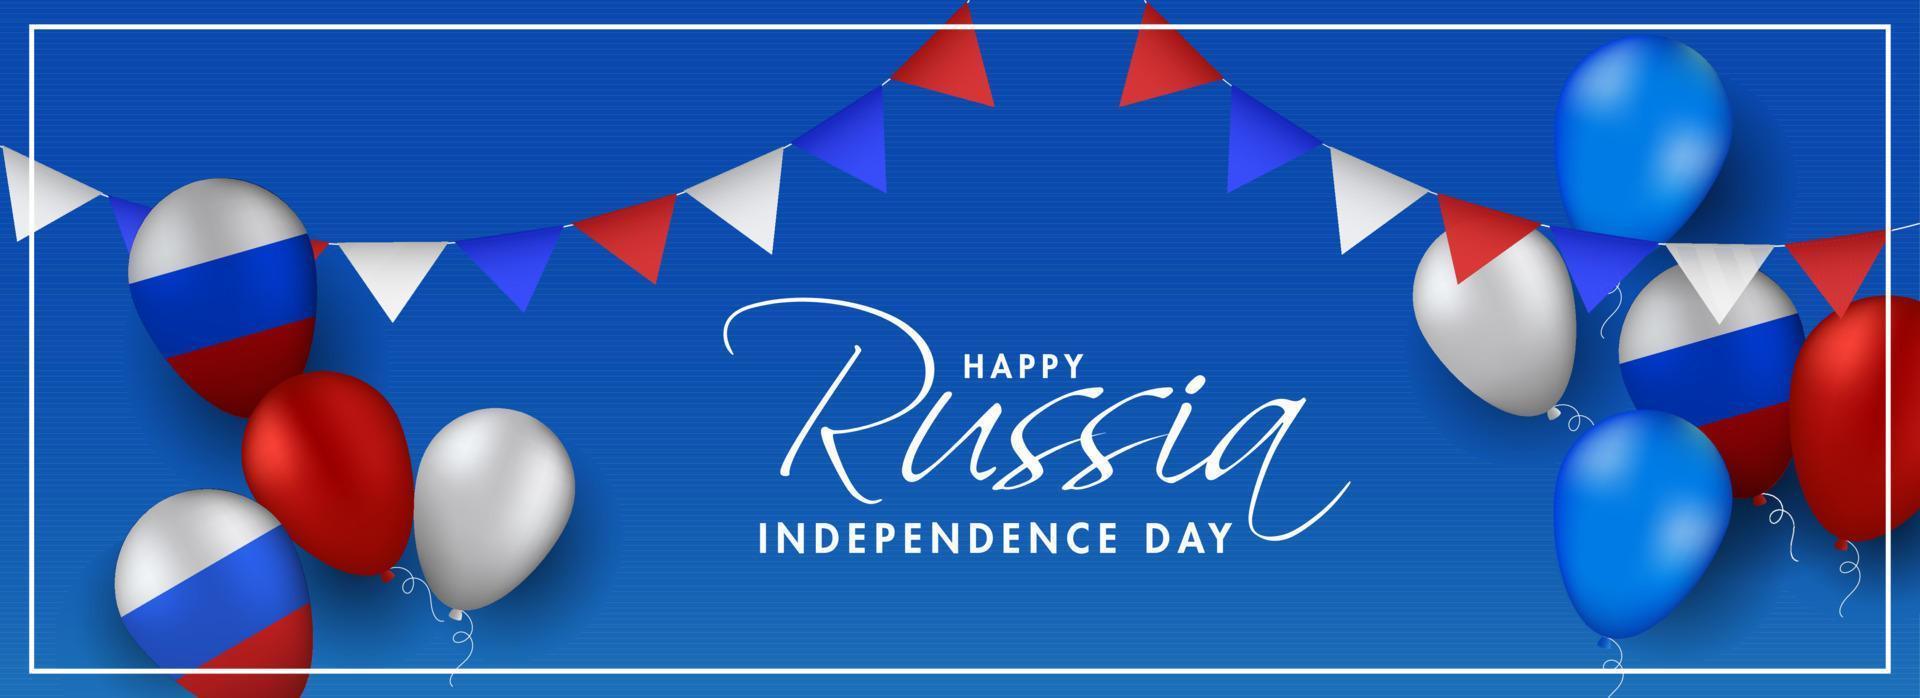 Lycklig ryssland oberoende dag font på blå bakgrund dekorerad med flaggväv flaggor och glansig ballonger i ryska nationell tricolor. vektor